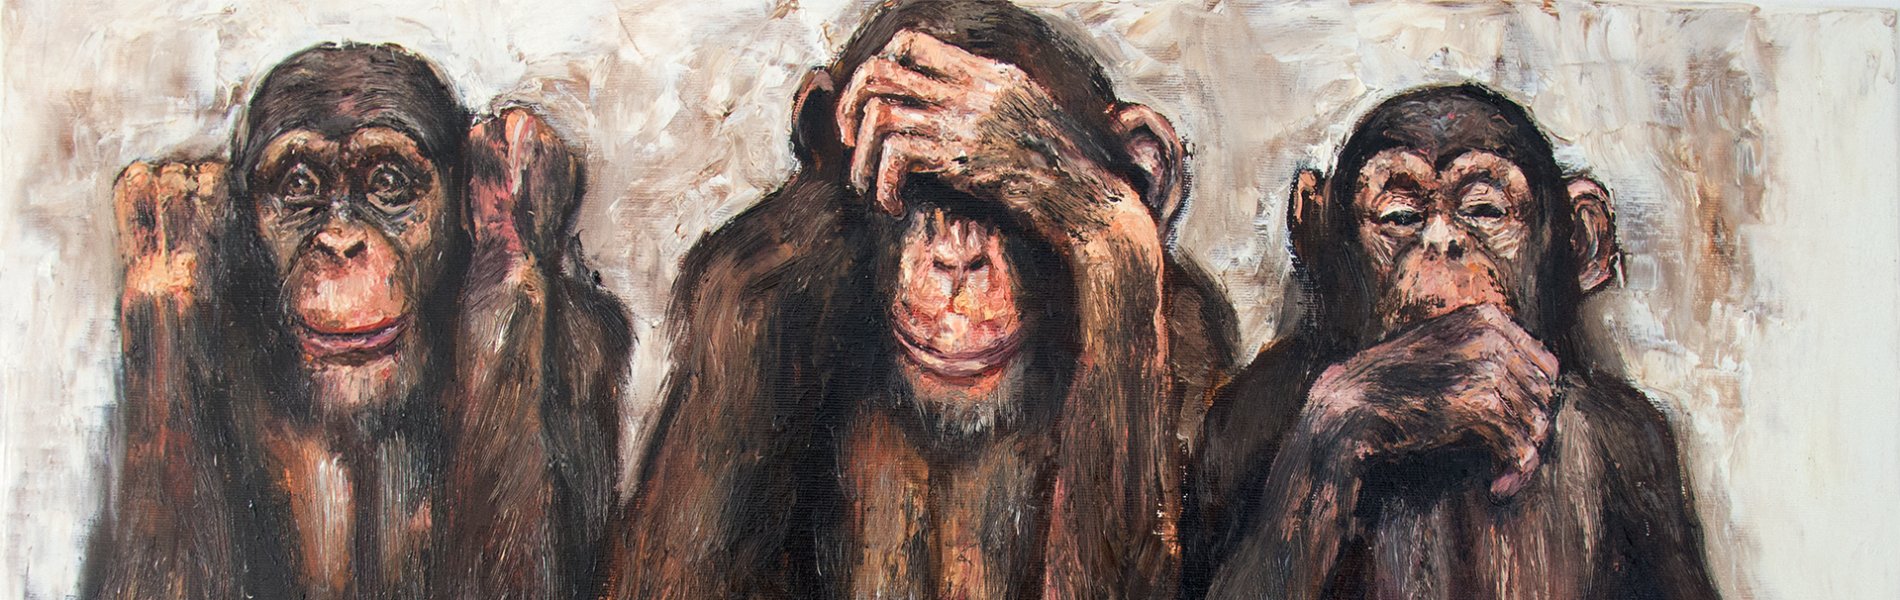 I do not see. I can not hear. I do not speak. | monkeys